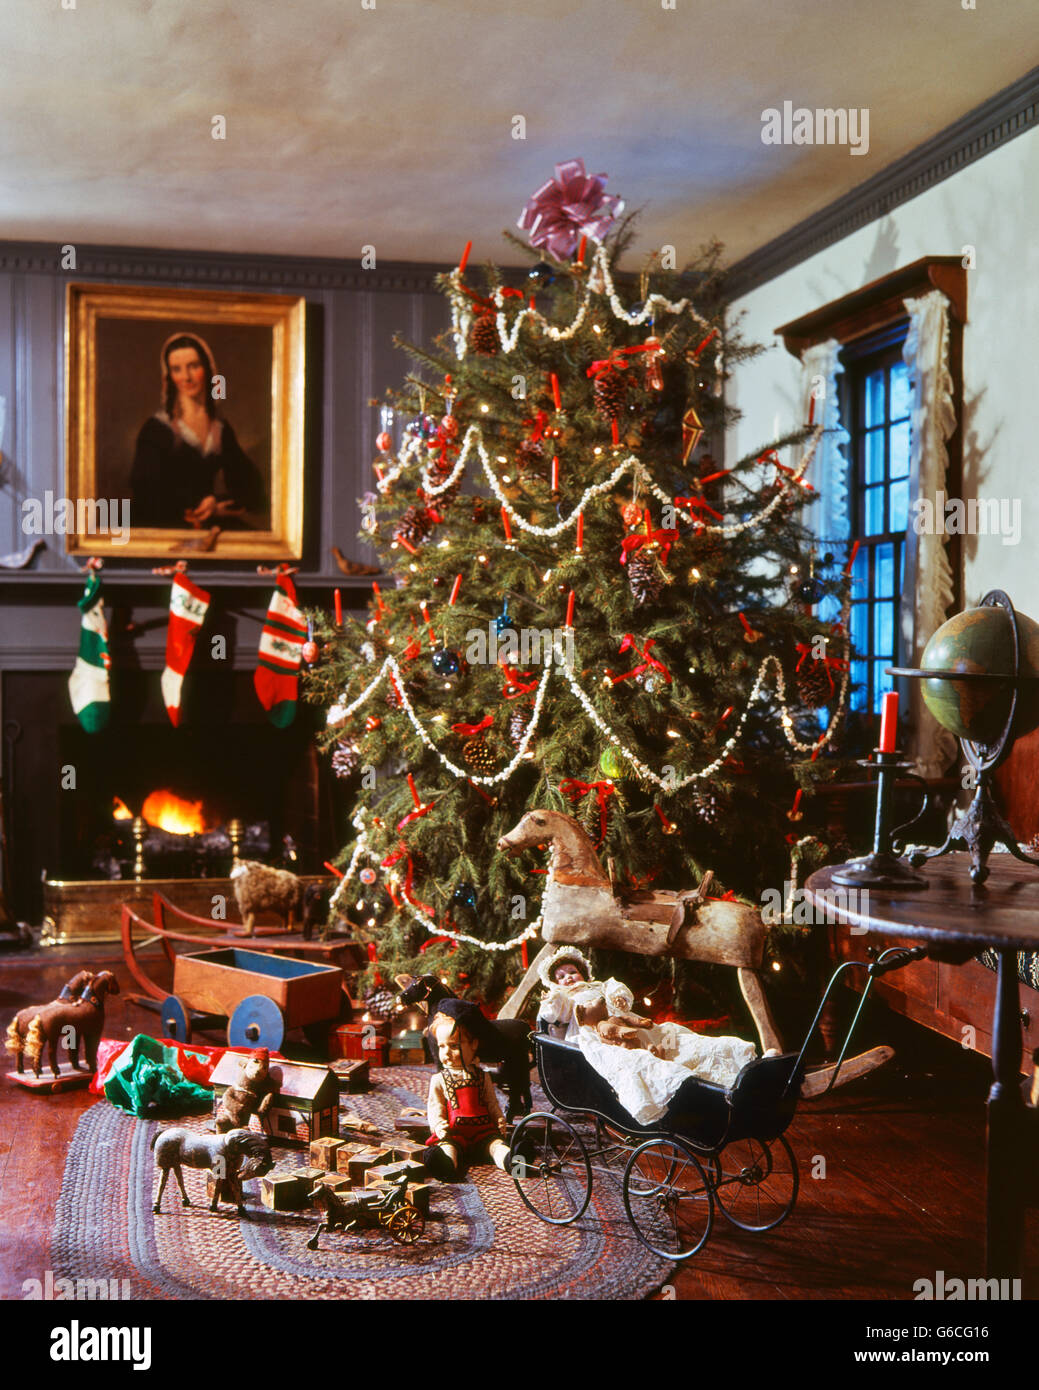 1970 1980 viejo árbol de navidad decorado con guirnaldas de palomitas de maíz por chimenea juguetes antiguos alrededor Foto de stock